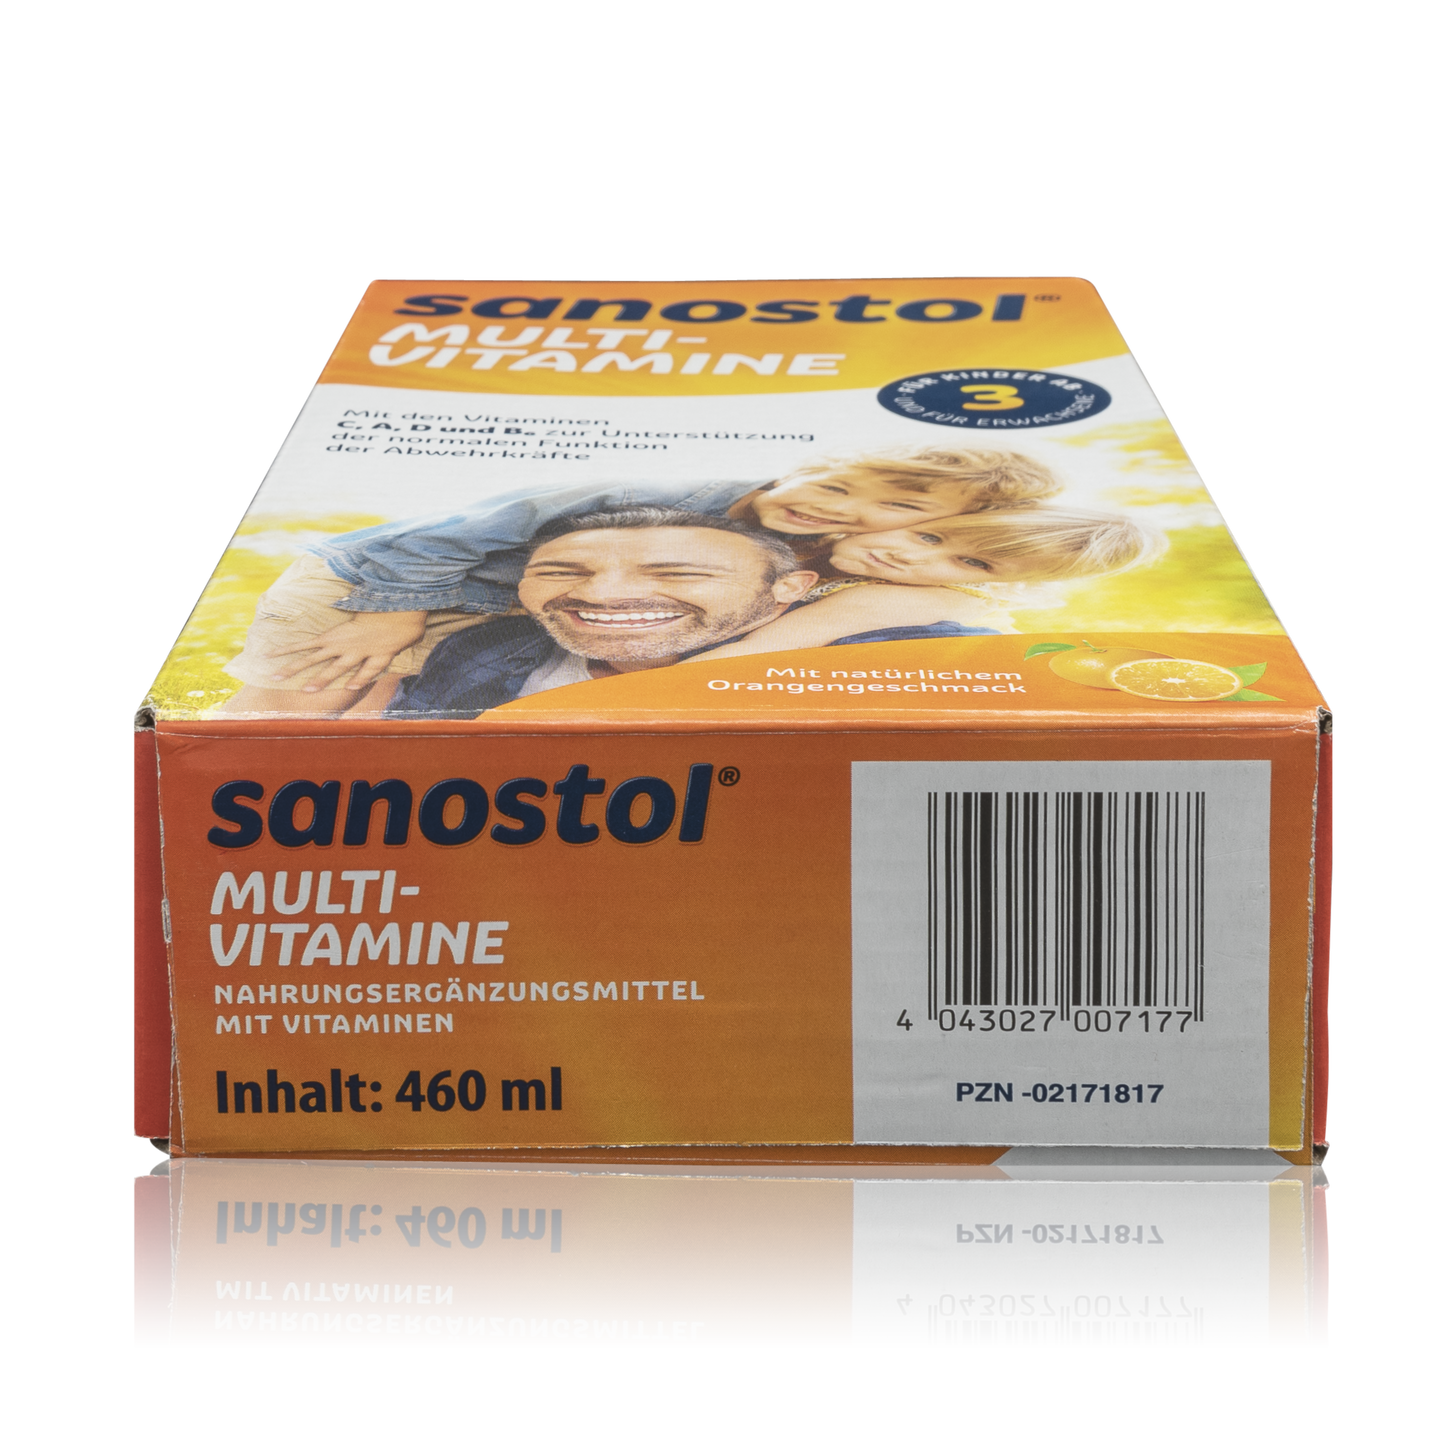 Sanostol Multi-Vitamine (460ml) - PZN: 2171817 - RoTe Place